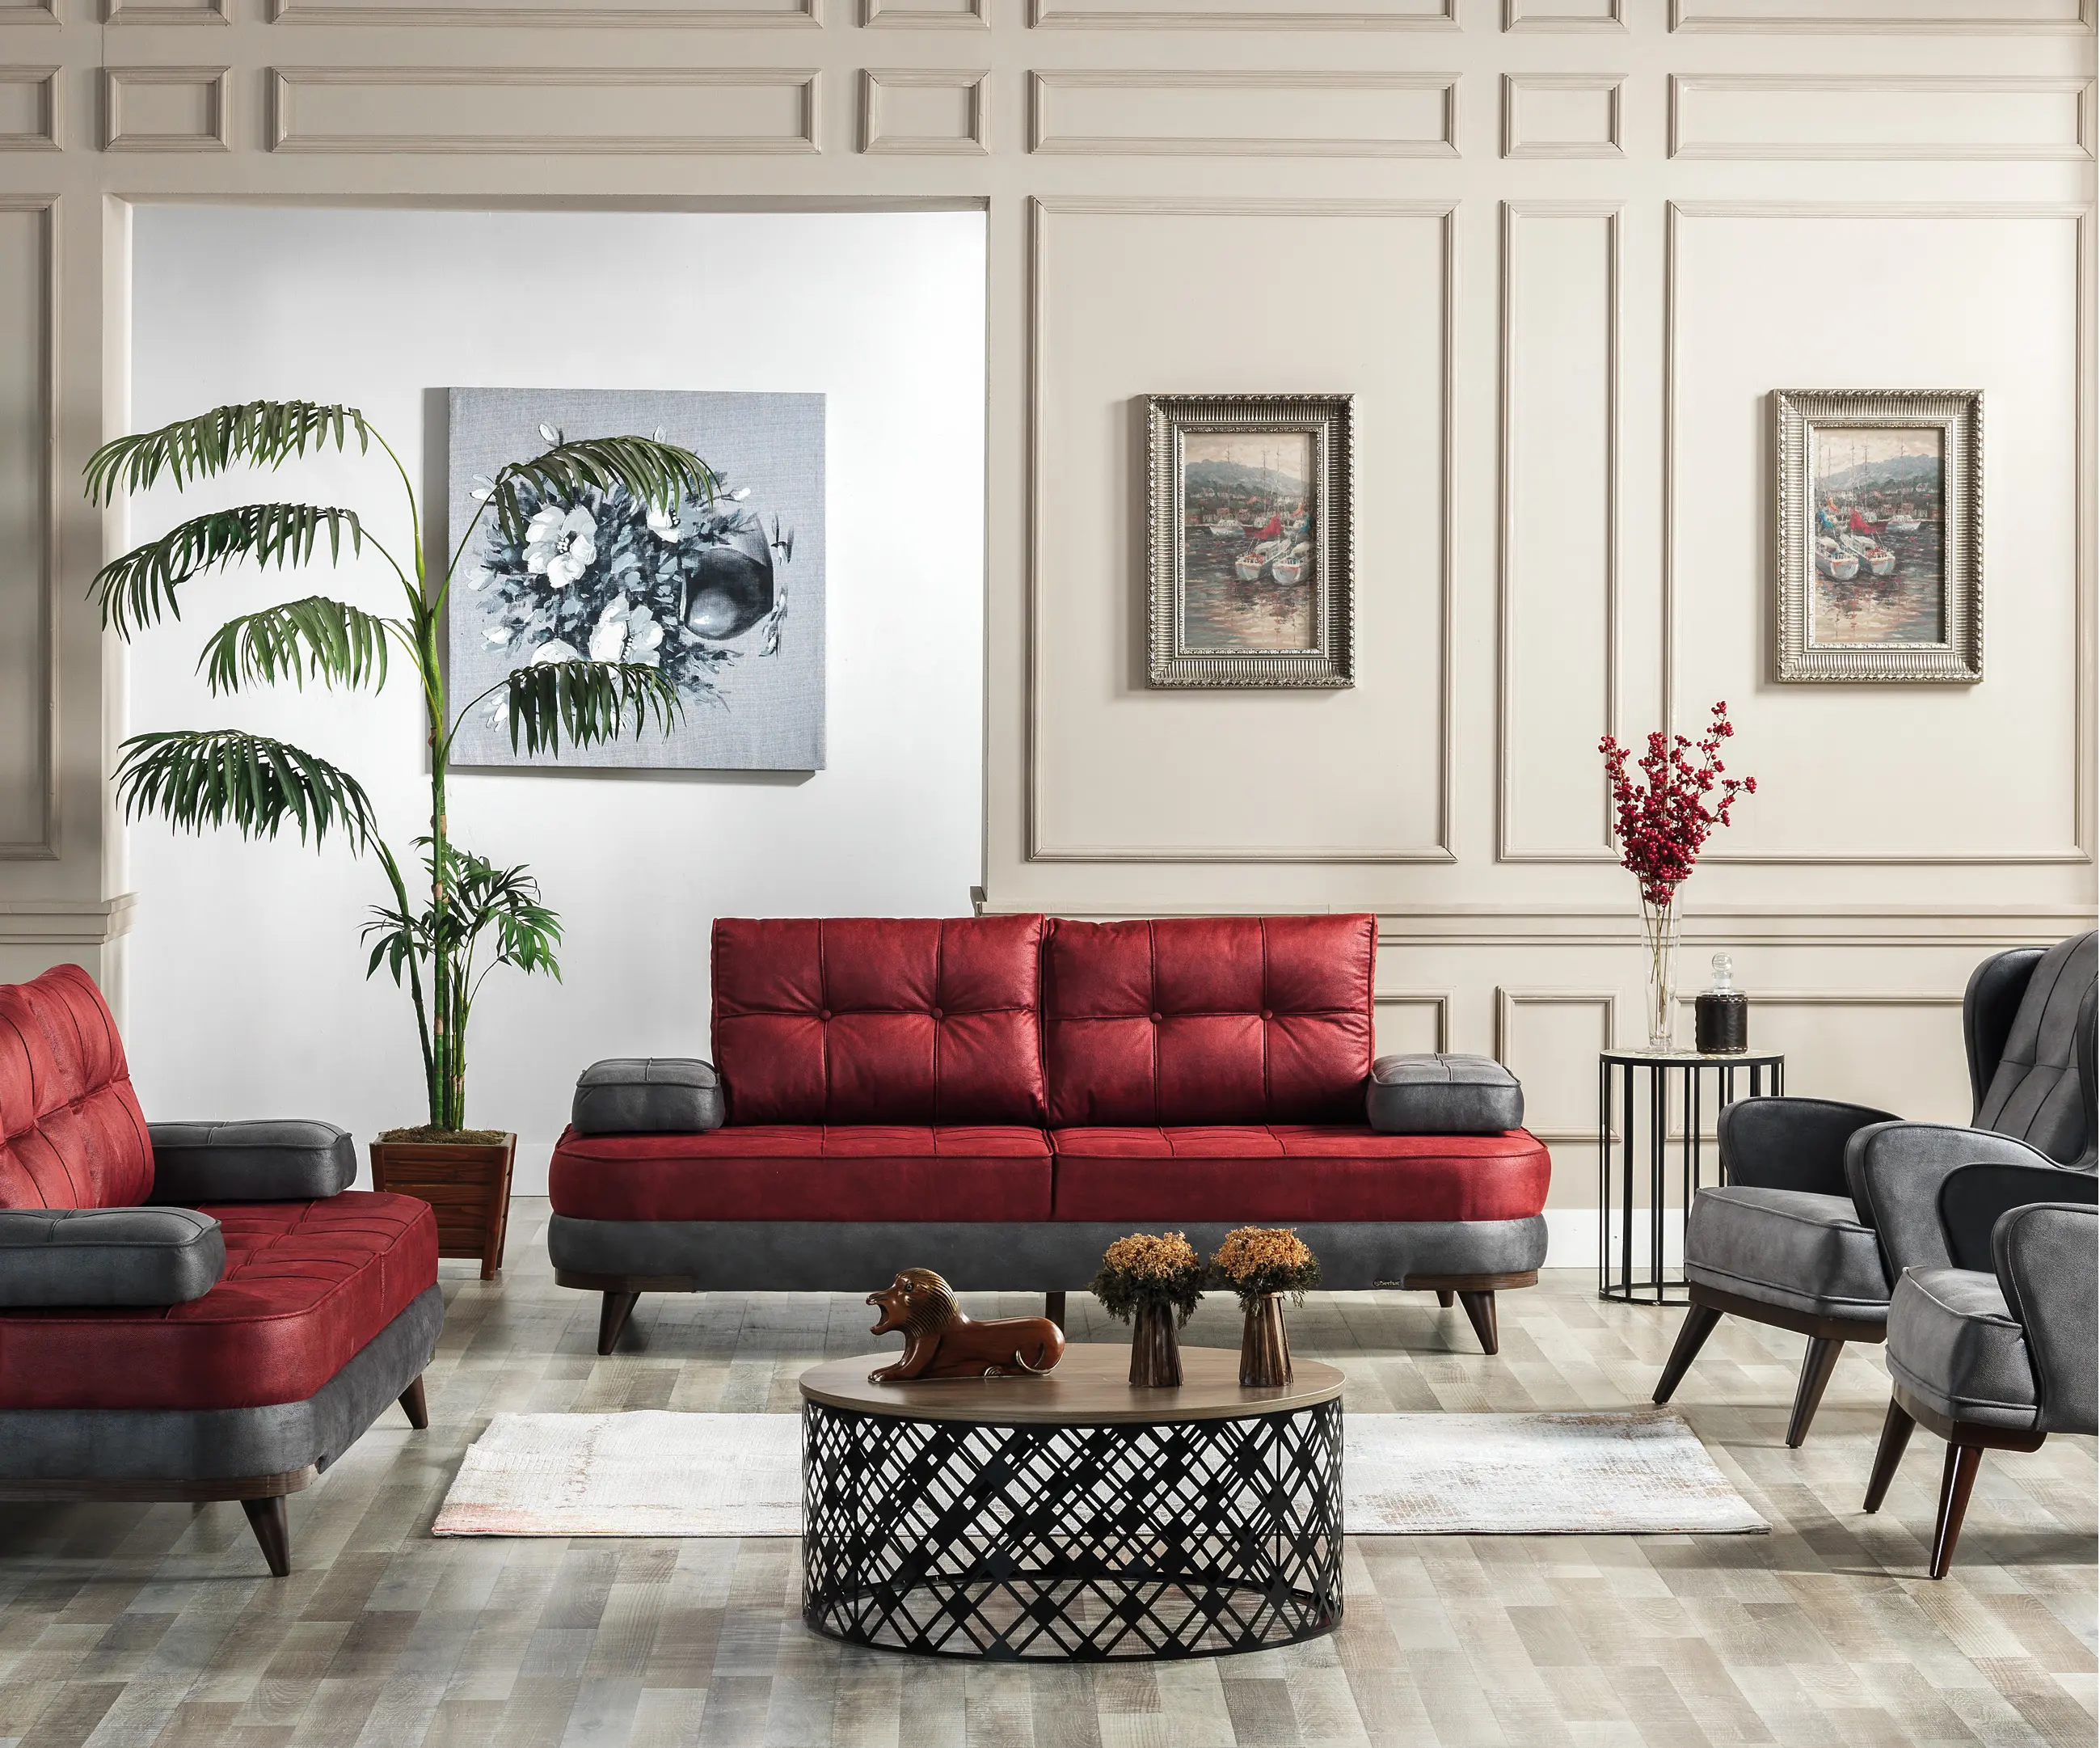 โซโหการออกแบบรุ่นใหม่เฟอร์นิเจอร์โซฟาเตียง Serhat เฟอร์นิเจอร์บ้านด้านบนผ้าที่ทันสมัยที่มีคุณภาพสูงใหม่สีแดงโซฟาไม้